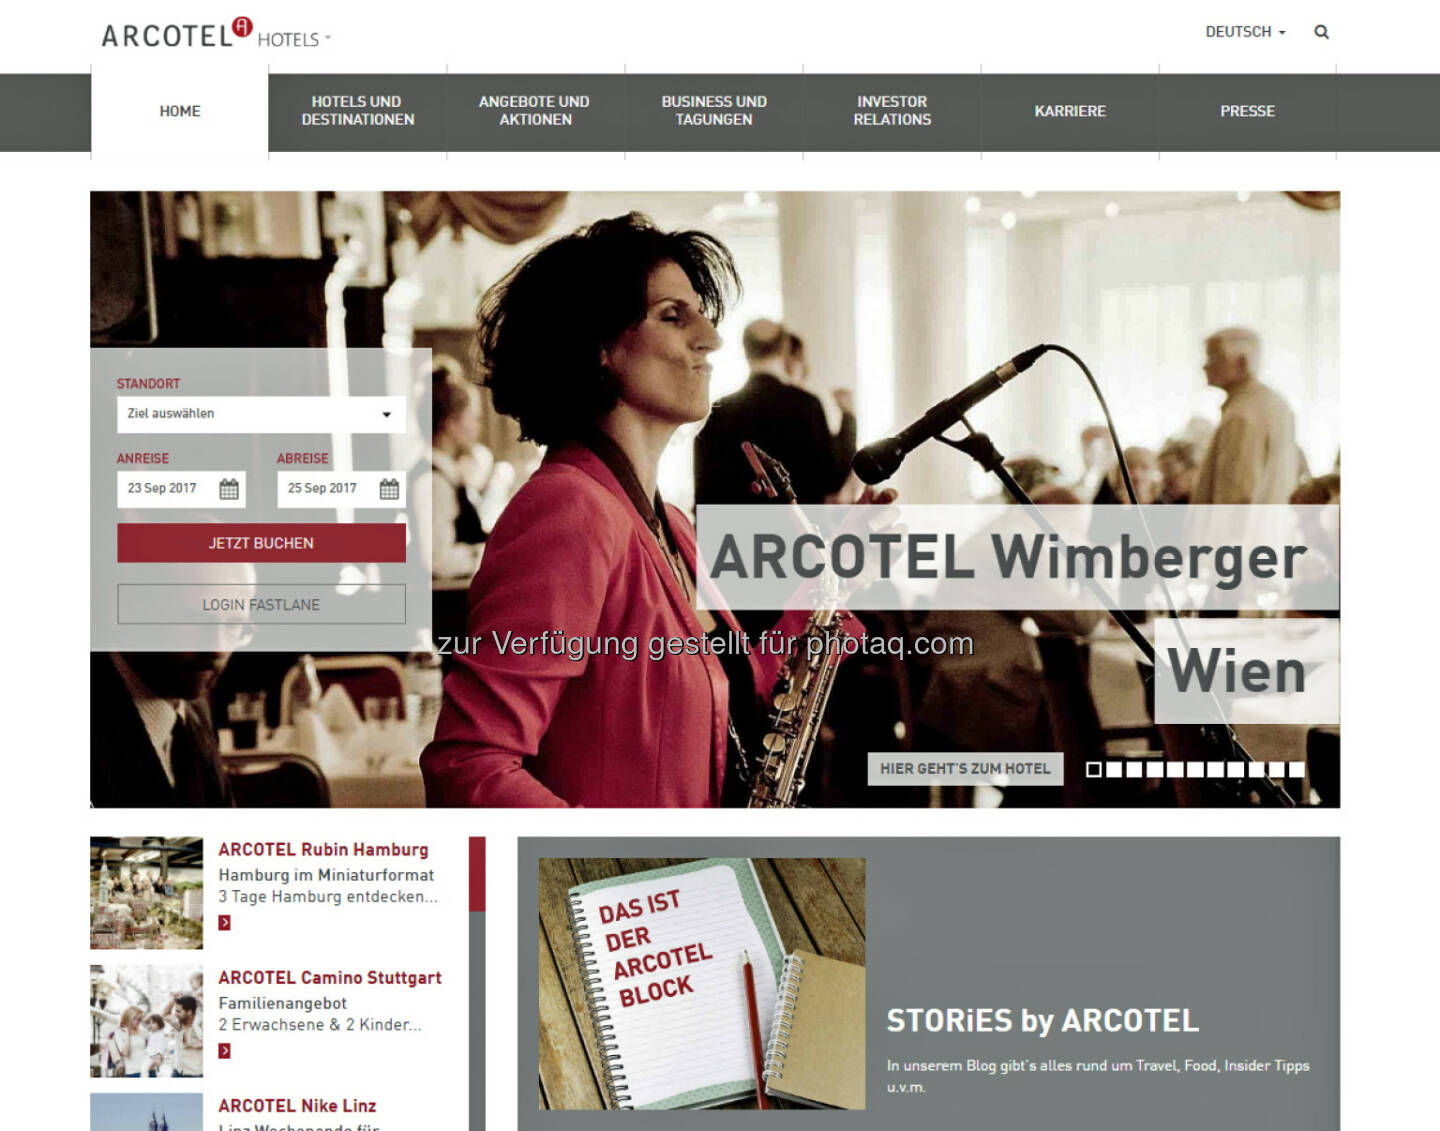 Neue Homepage Arcotel : Website von Arcotel nach Relaunch online : Fotocredit: Arcotel Hotels